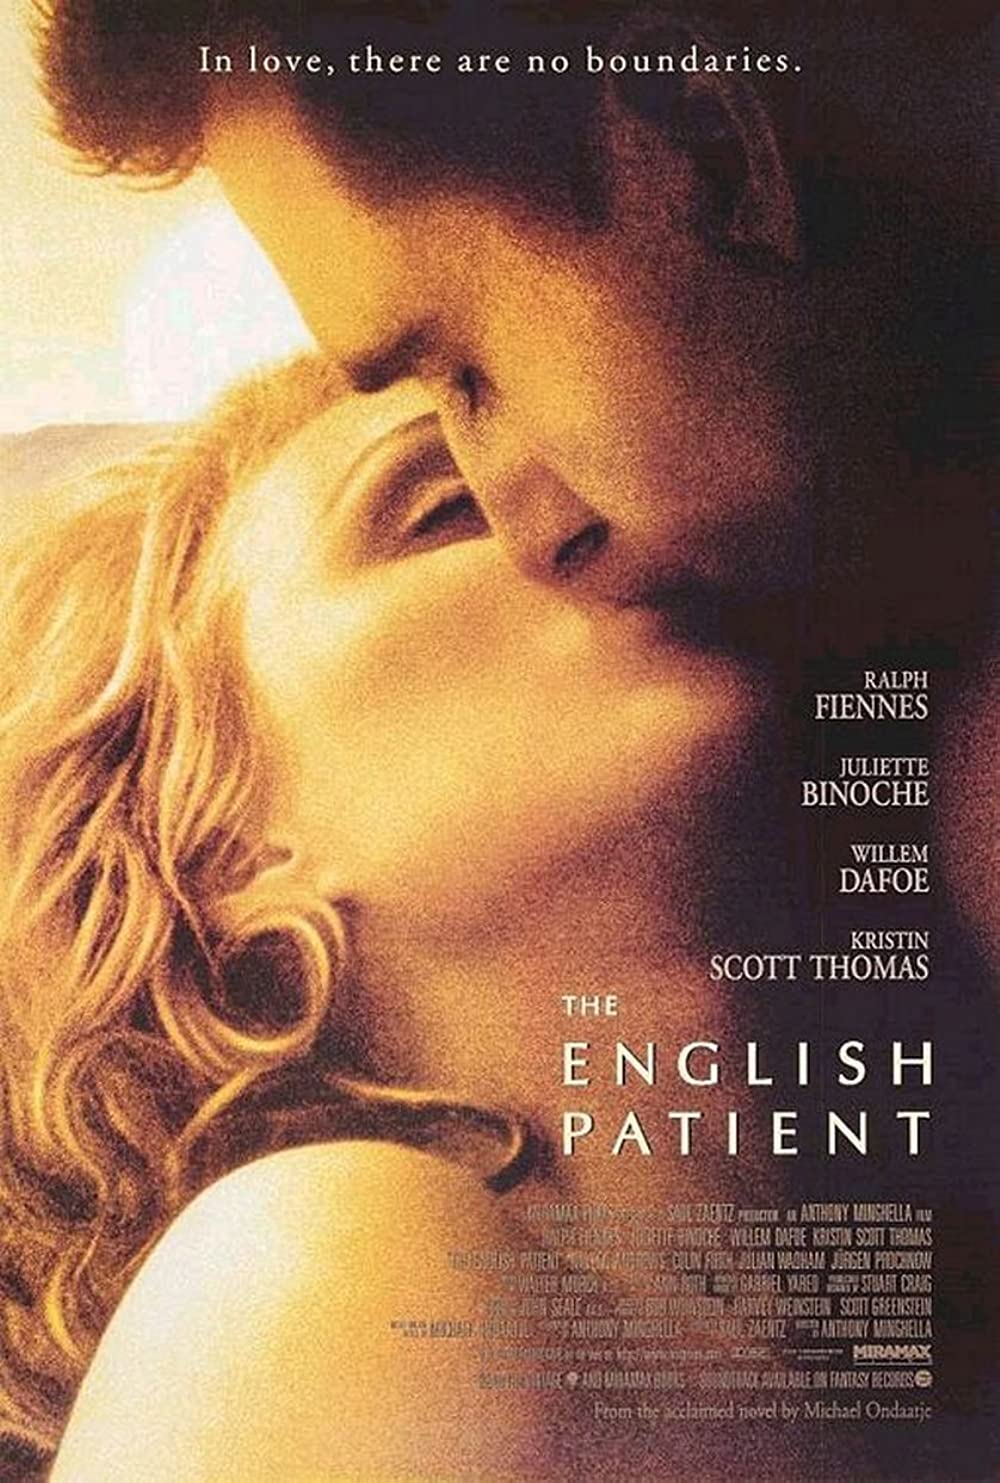 Filmbeschreibung zu The English Patient